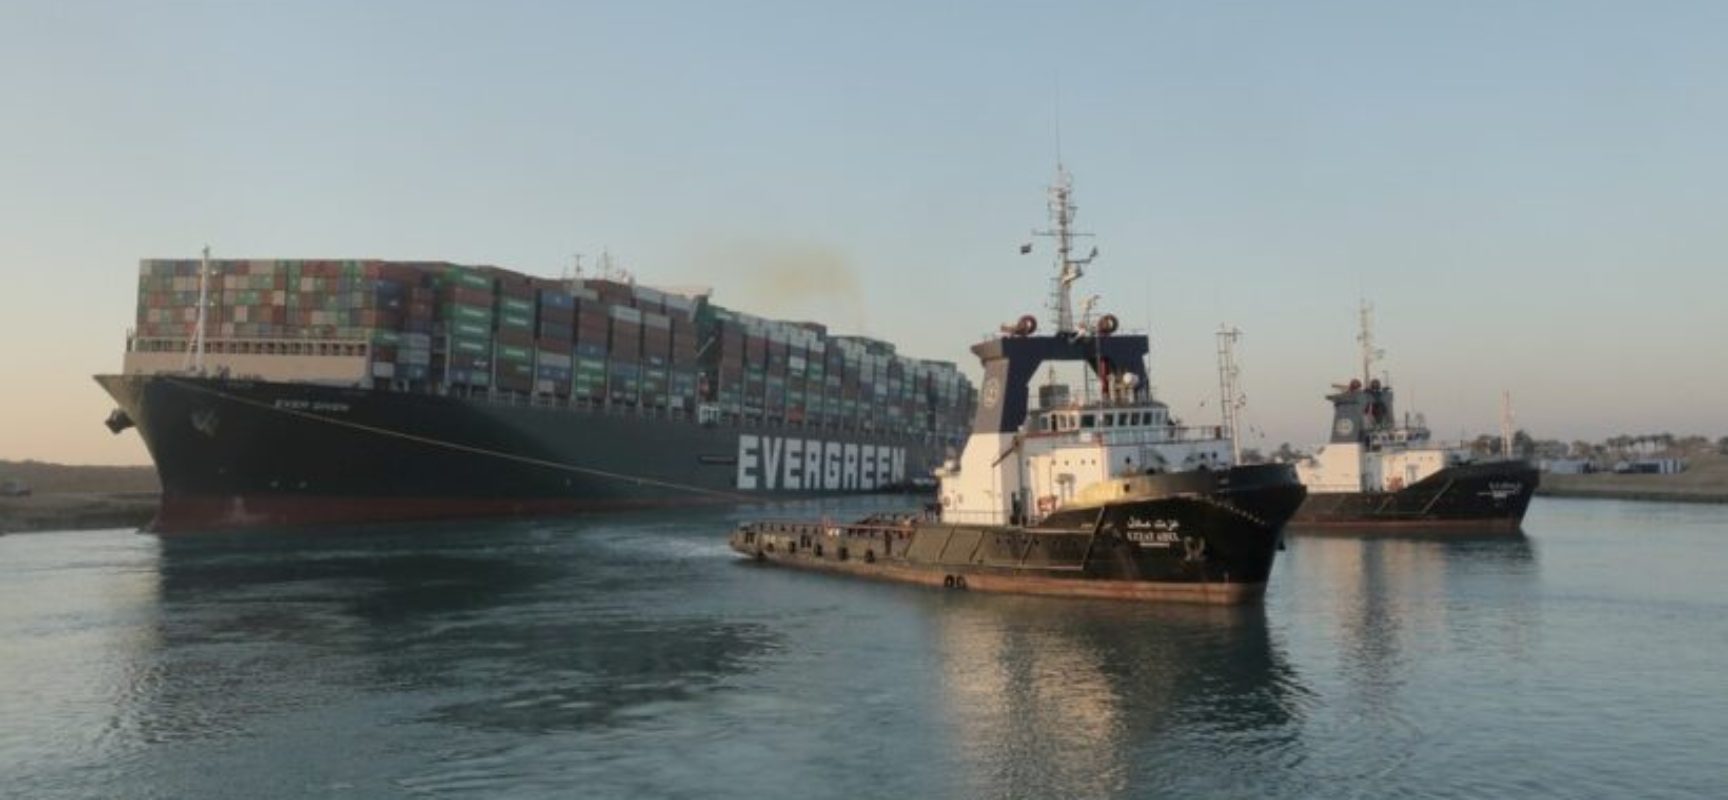 Navio desencalha e volta a navegar após seis dias no Canal de Suez